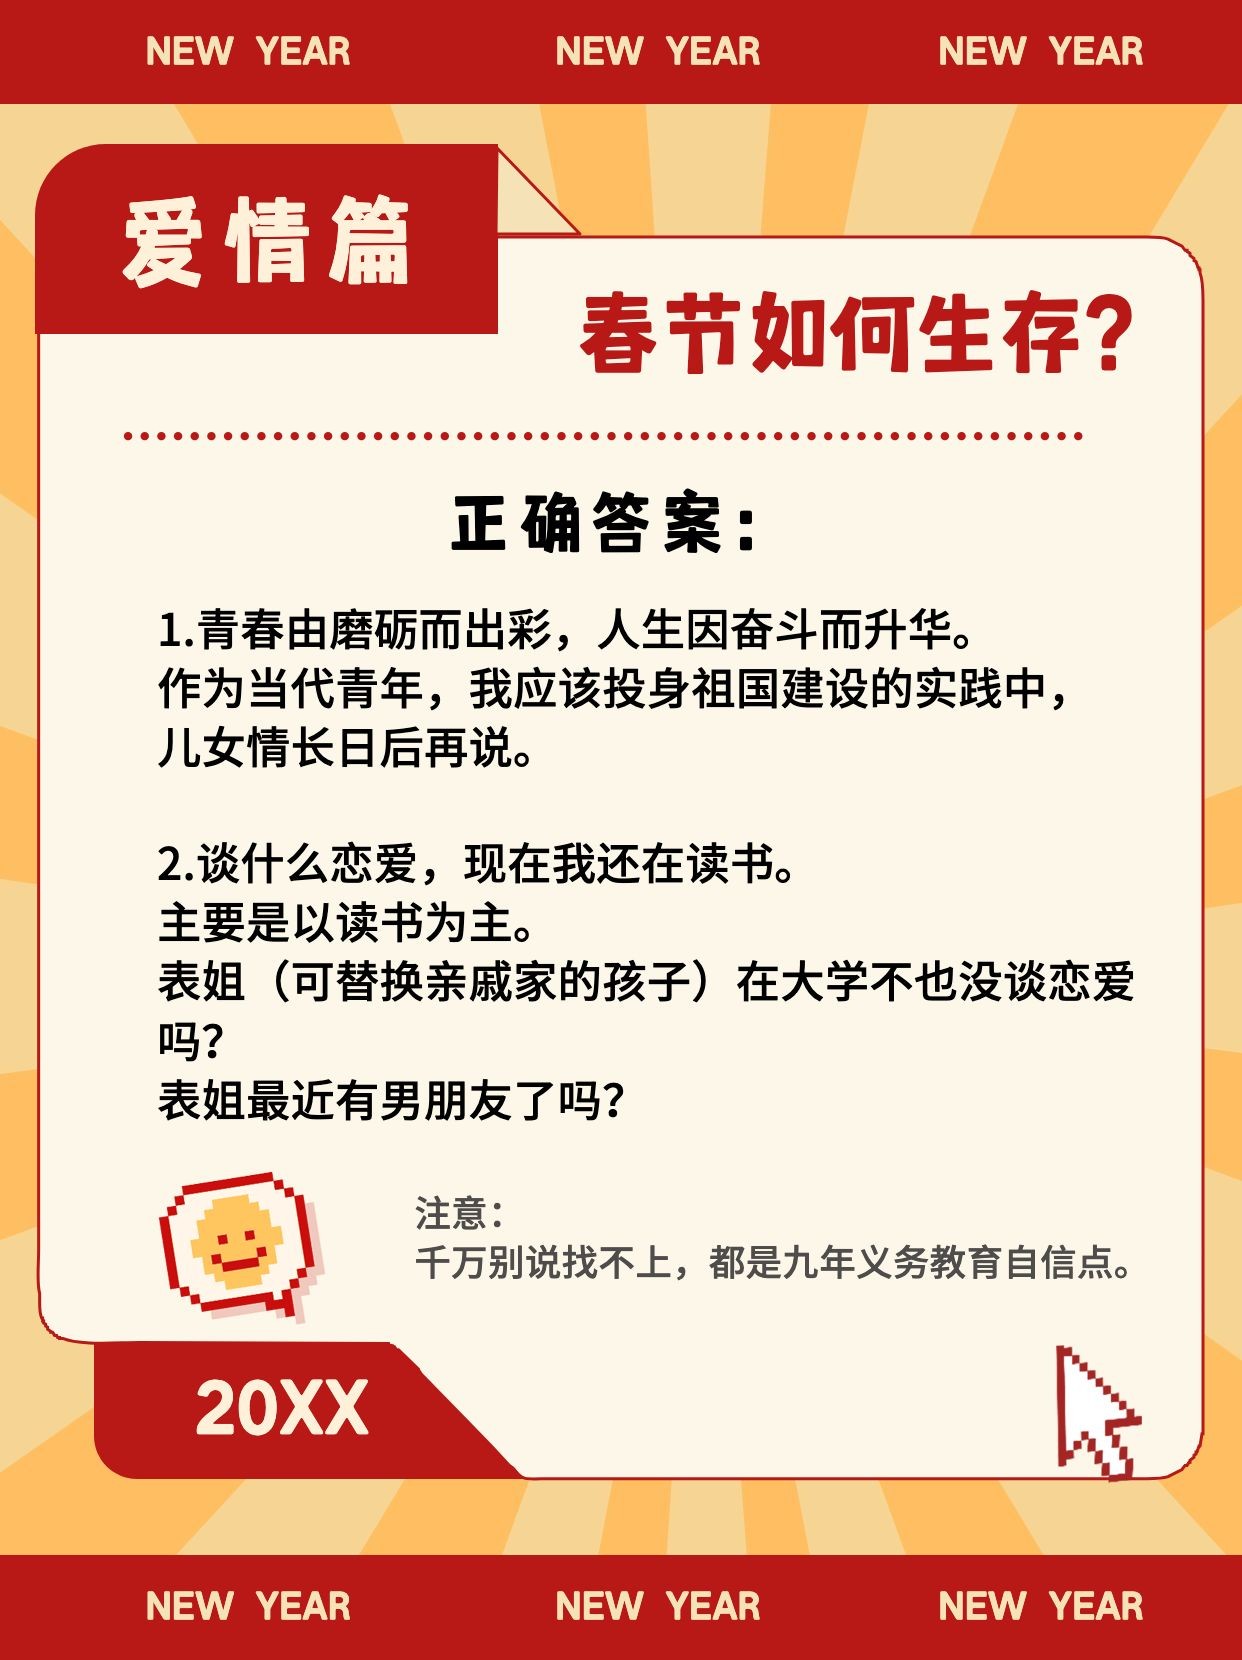 新年春节攻略分享小红书封面配图